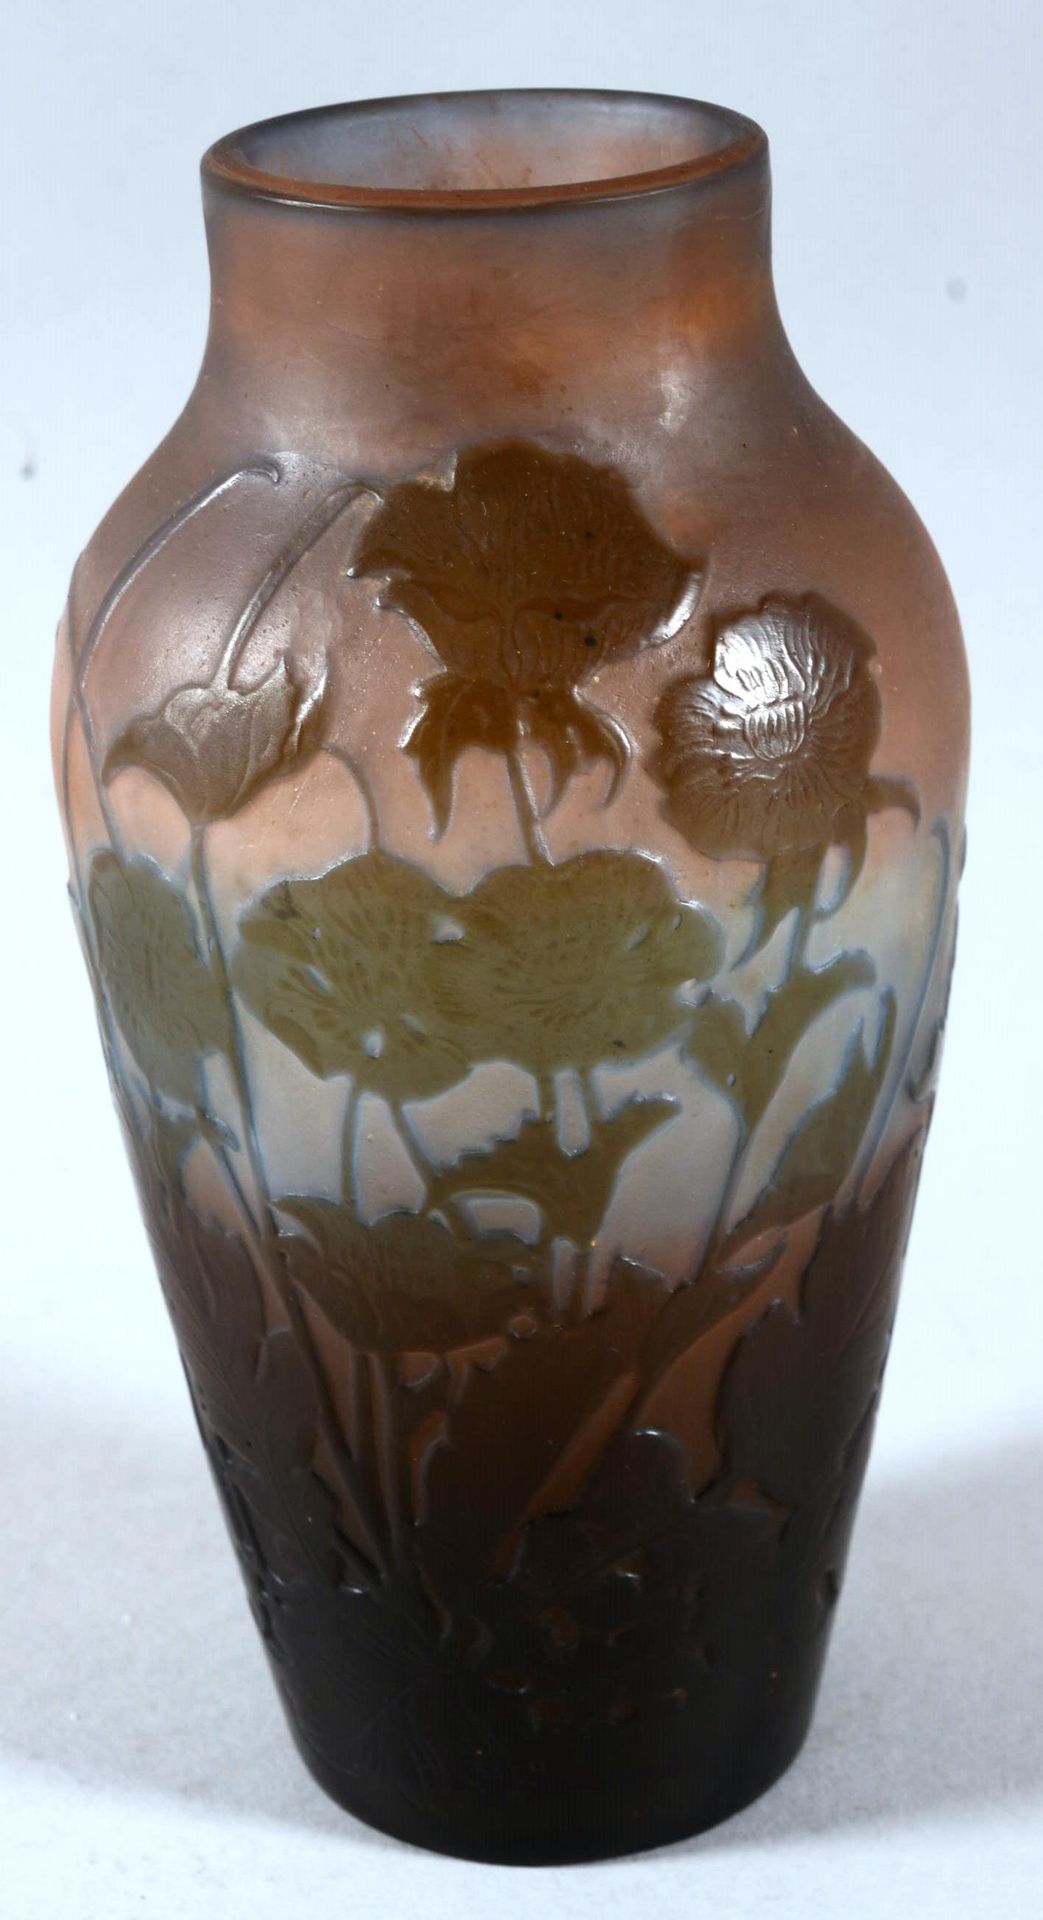 Emile Galle vase Emile GALLÉ (1846-1904)

Vase aus mehrschichtigem Glas mit säur&hellip;